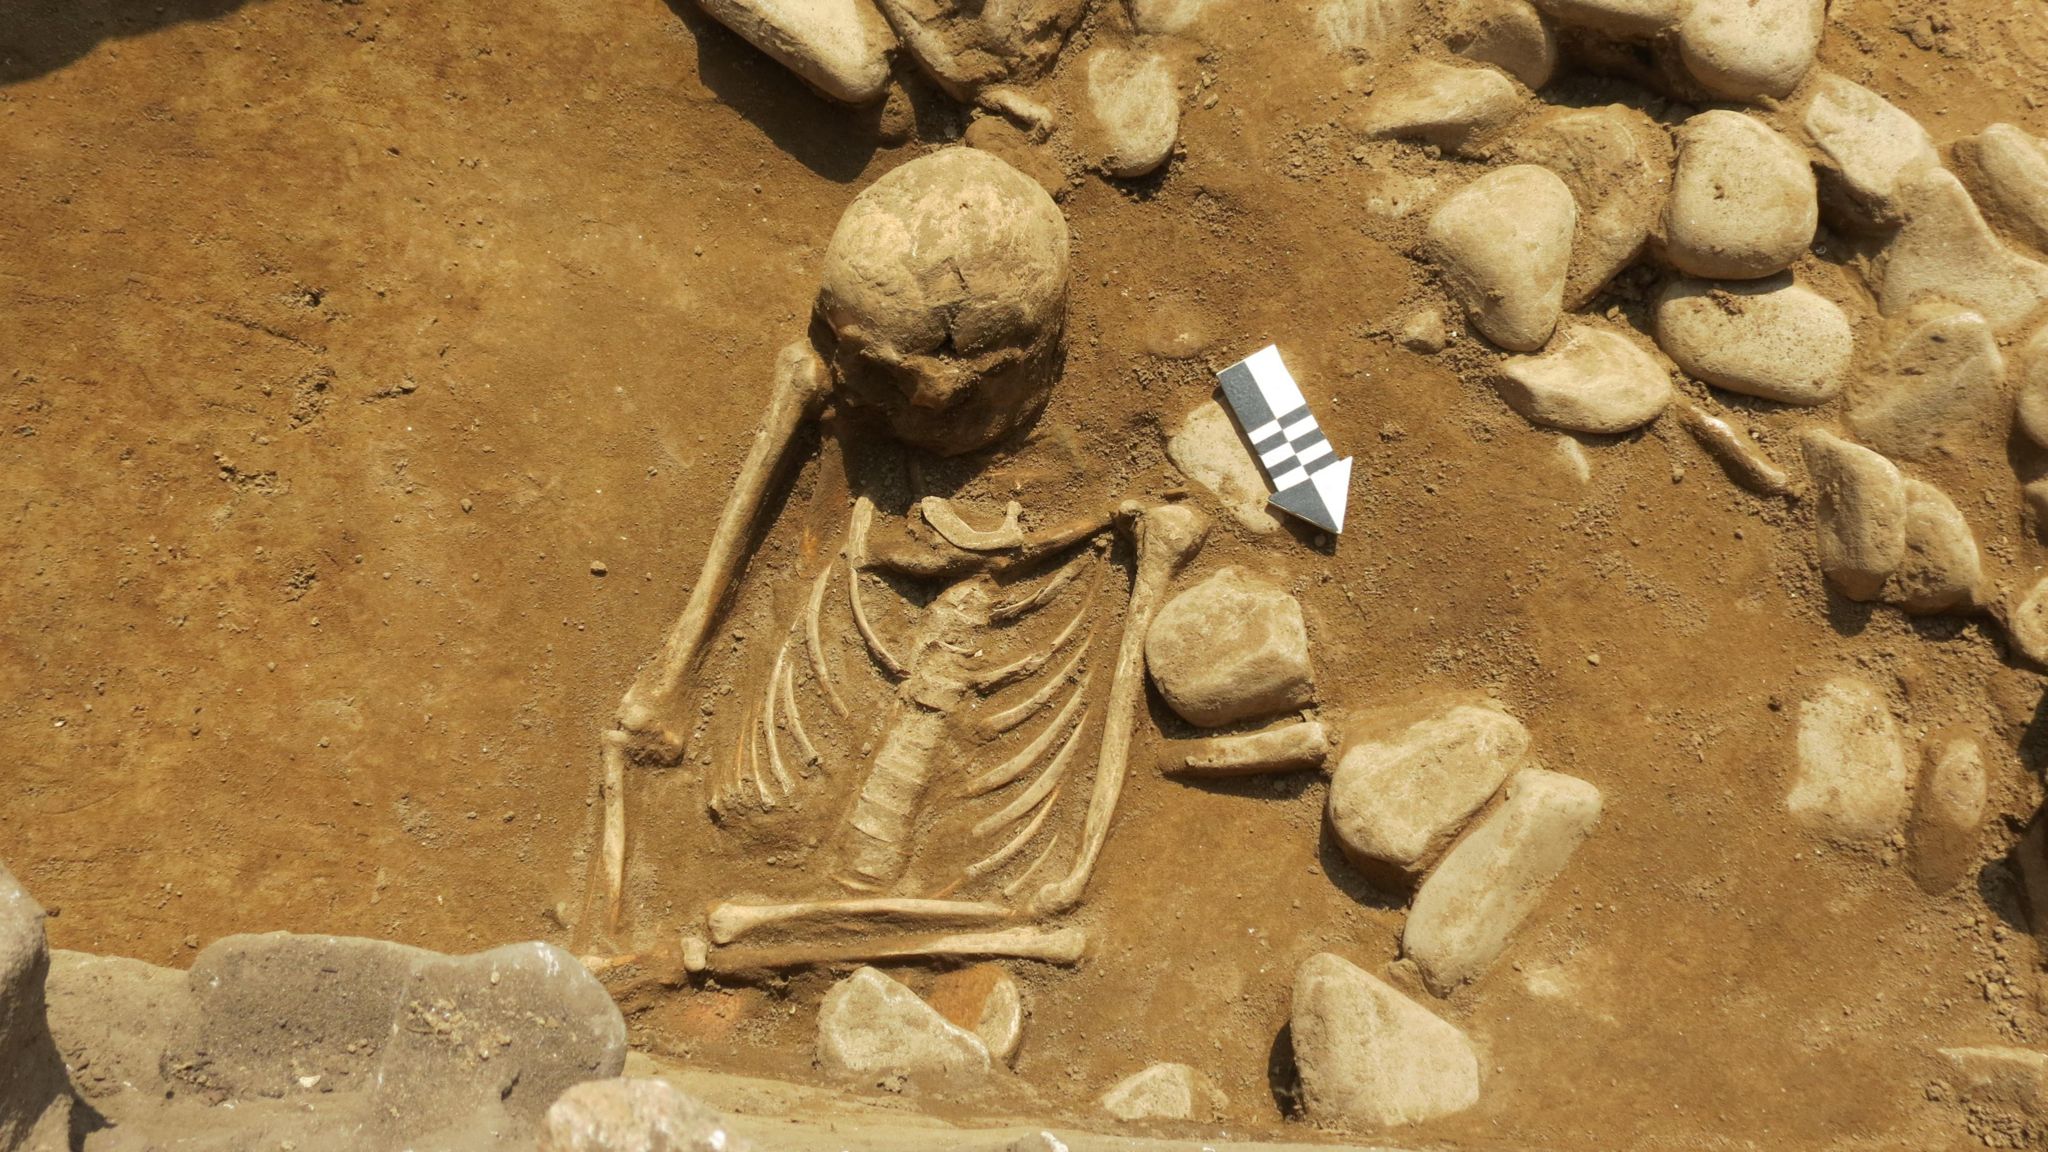 Skeleton found in Alderney